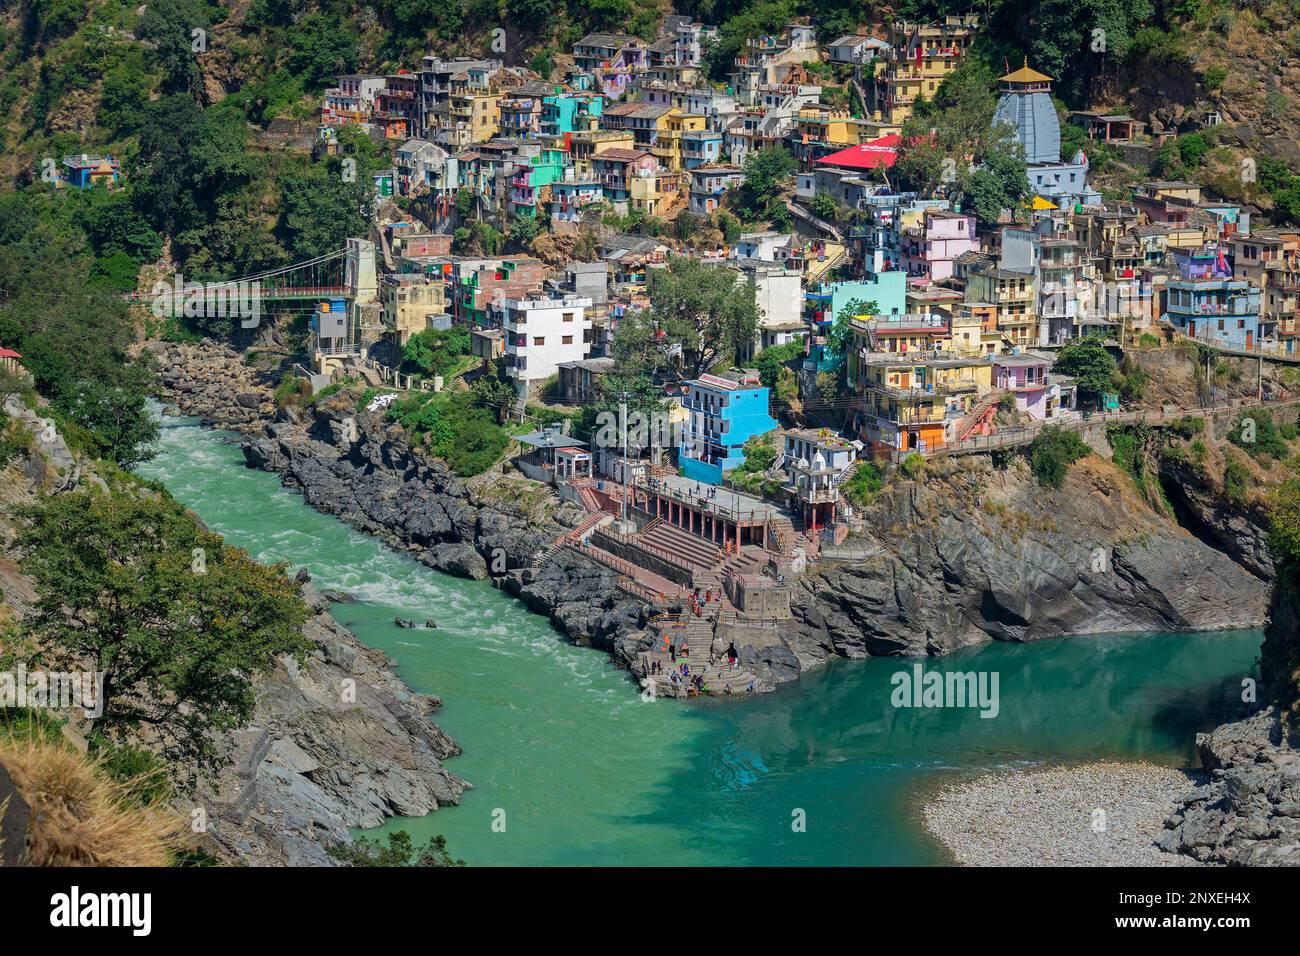 Hôtels et stations balnéaires de Devprayag, Garhwal, Uttarakhand, Inde. Rivière Bhagirathi du côté gauche et rivière Alakananda avec bleu turquoise de la rig Banque D'Images